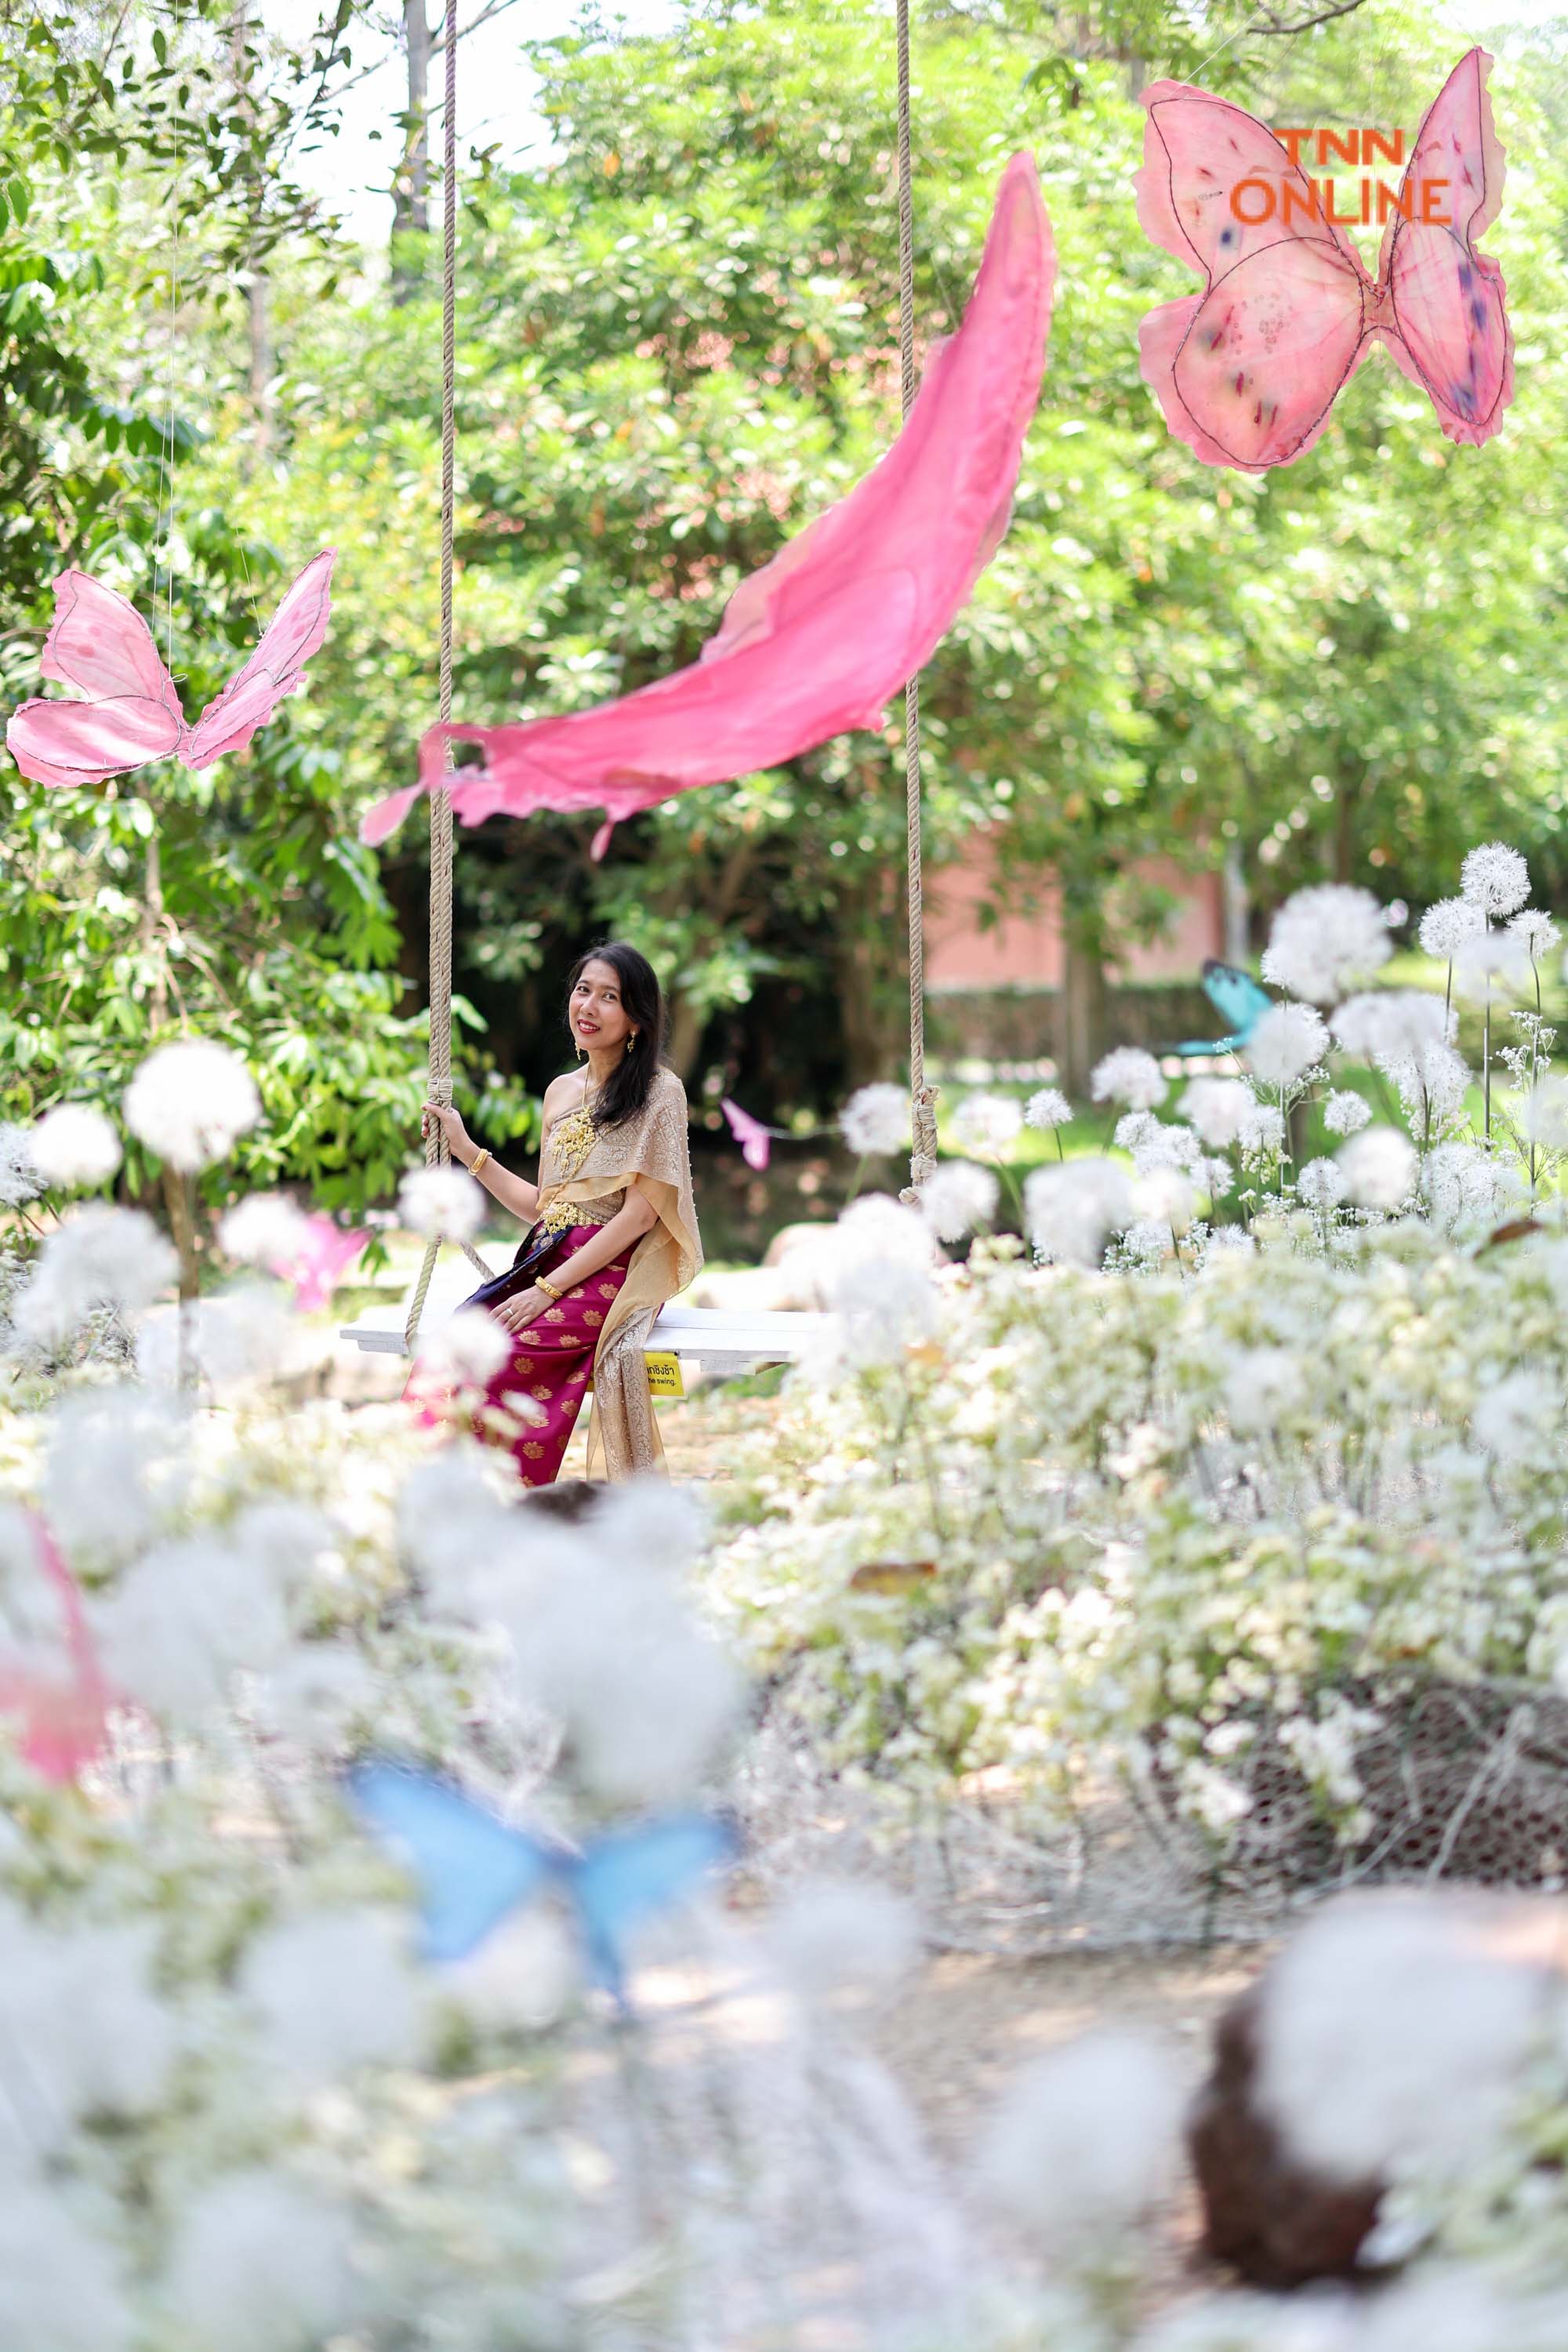 แชะ เที่ยว ชมดอกไม้นานาพันธ์ุ งานเทศกาลฤดูร้อน ณ สัทธา อุทยานไทย